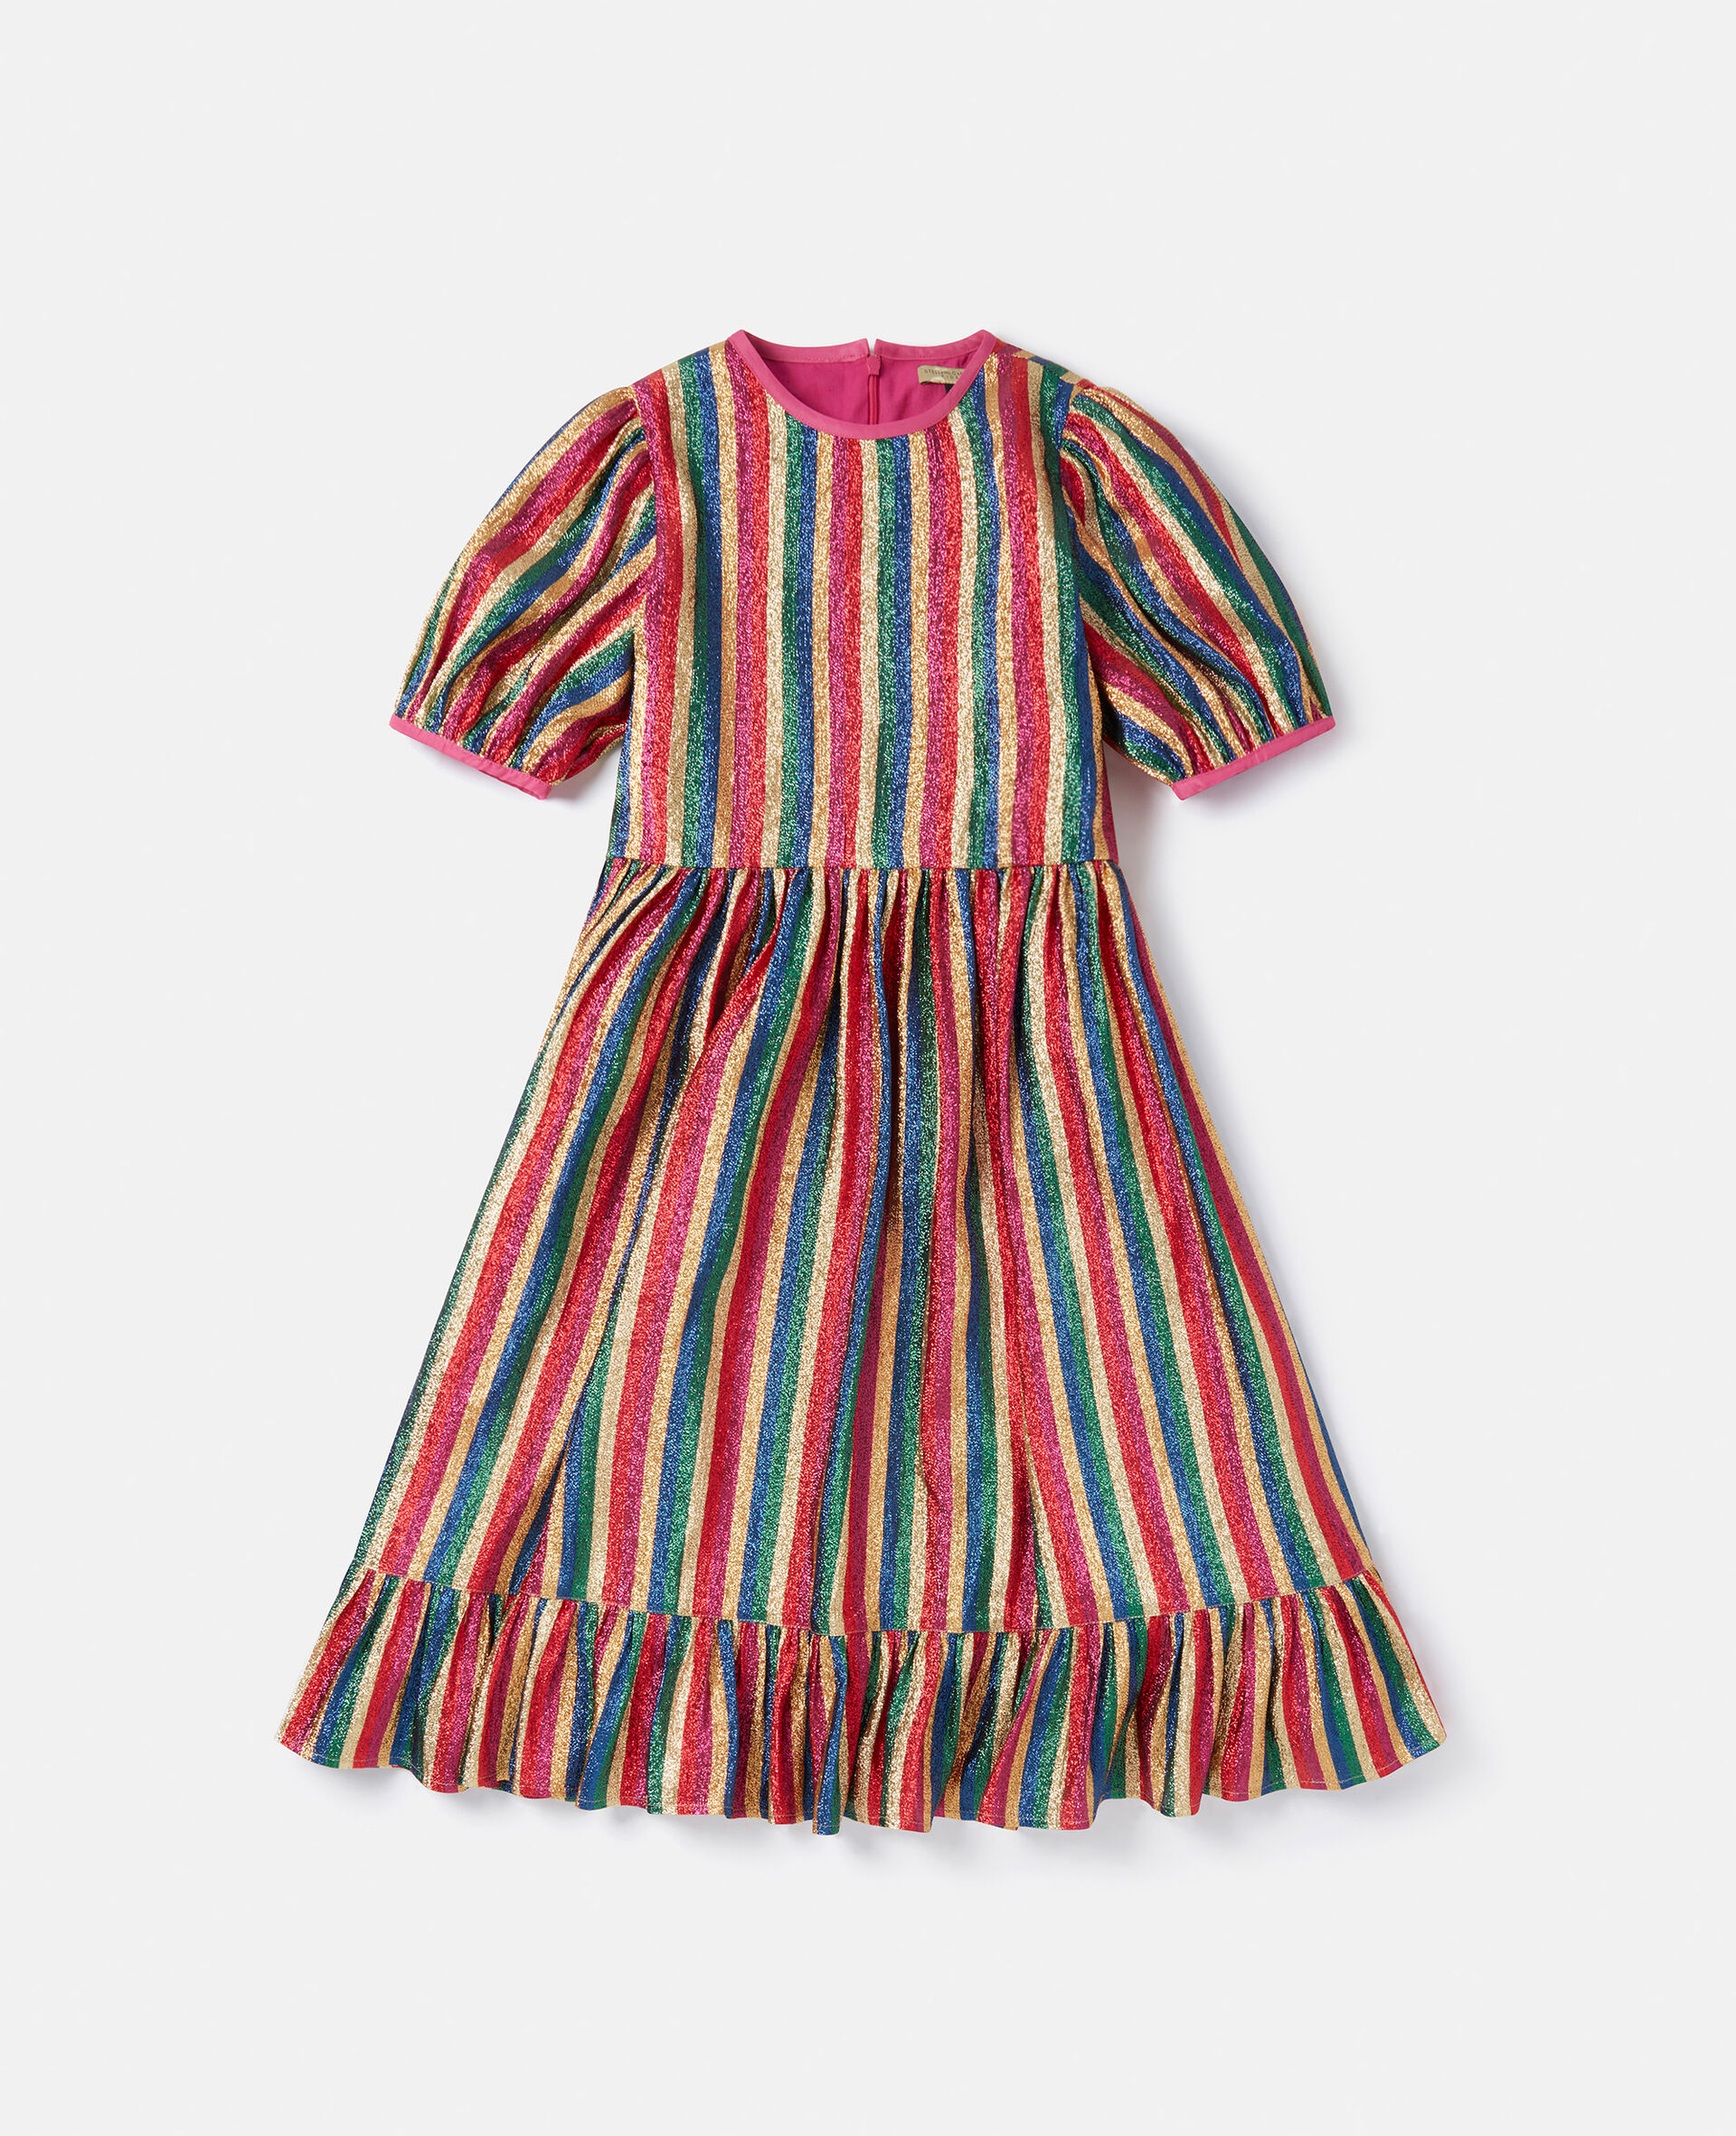 Metallic Rainbow Stripe Dress-Multicolour-large image number 0